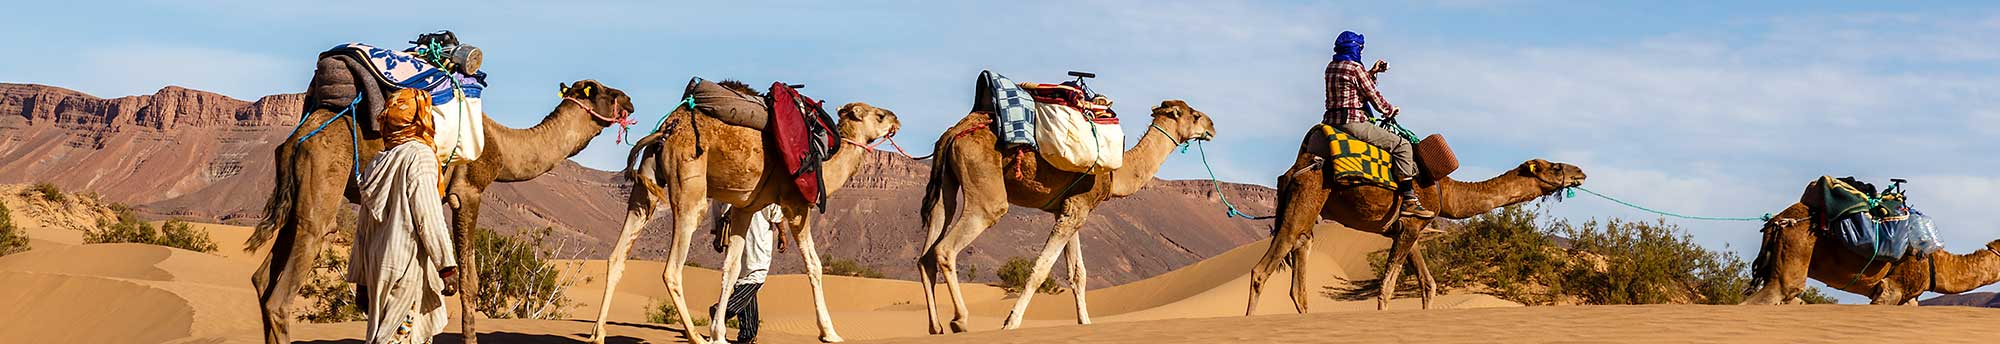 Entradas Excursión 3 días al desierto de Merzouga